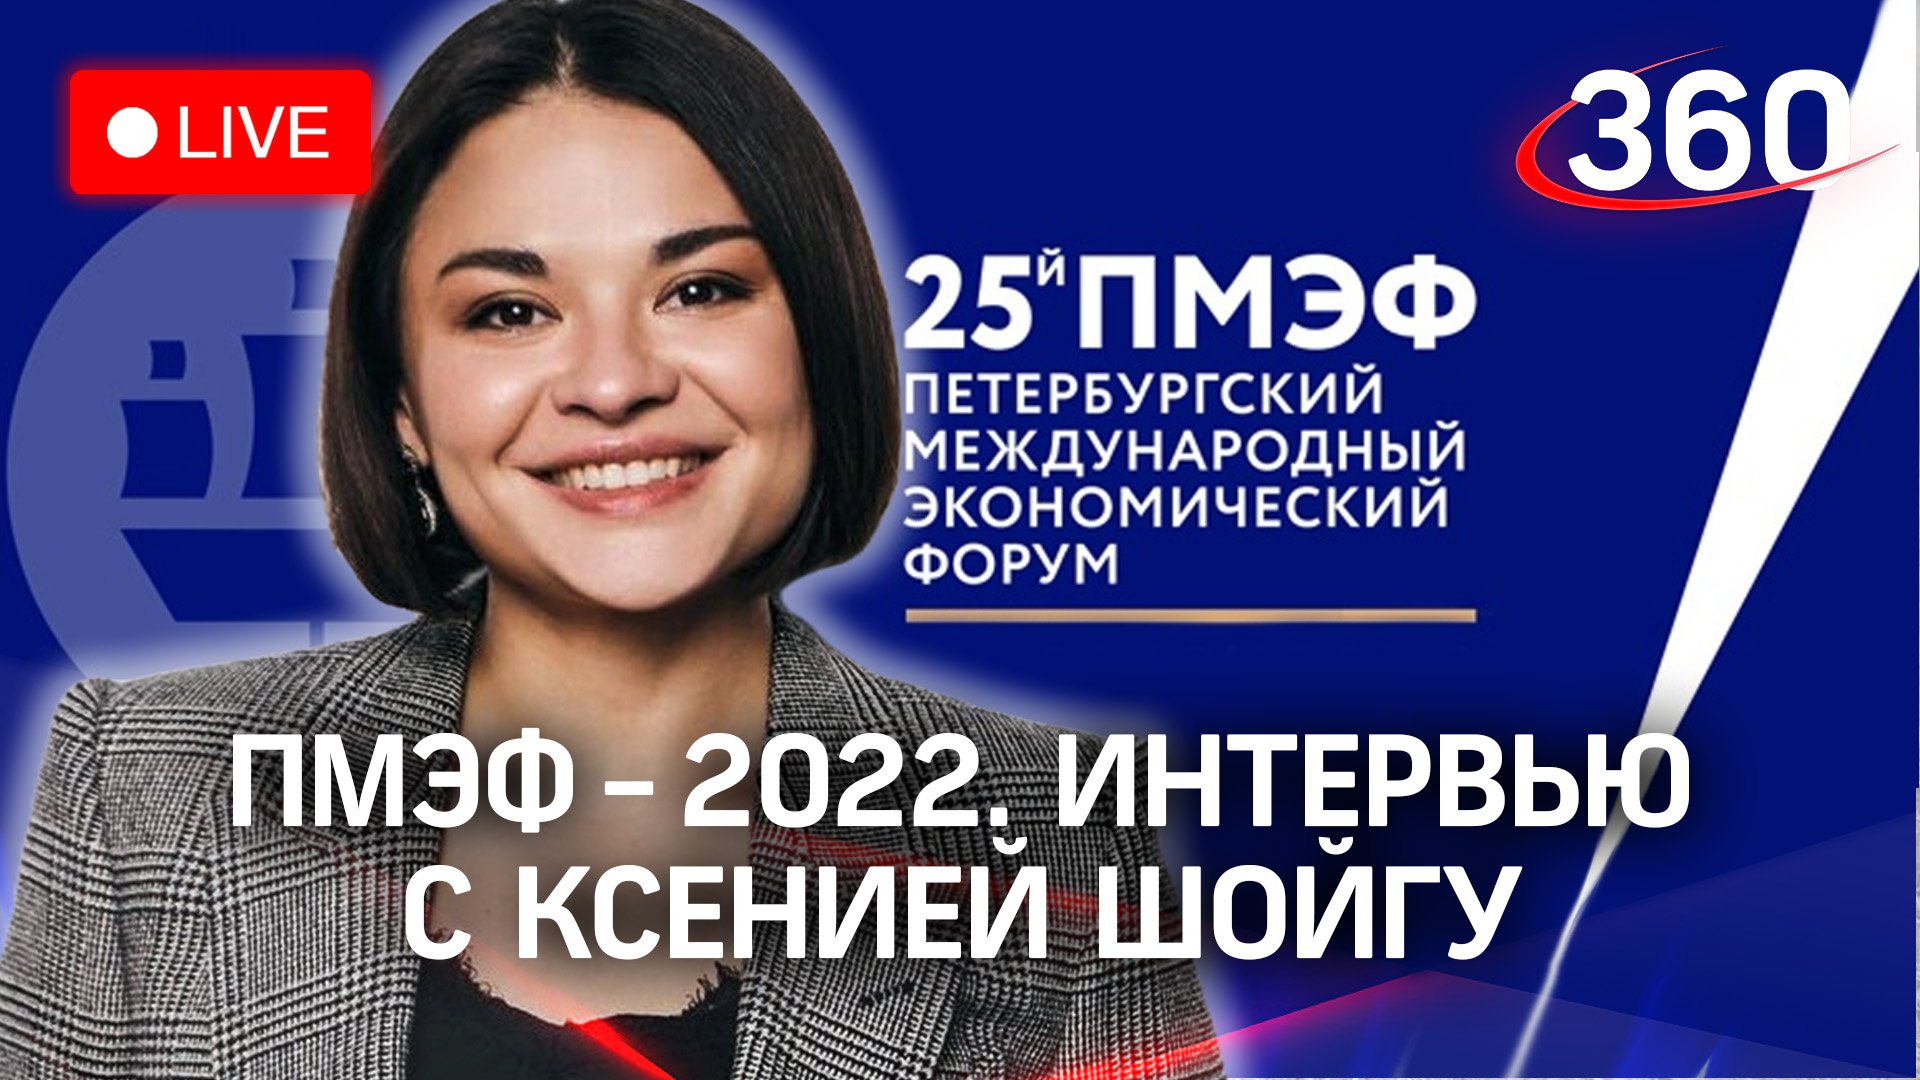 ПМЭФ-2022: интервью Ксении Шойгу о «Гонке героев» в Подмосковье